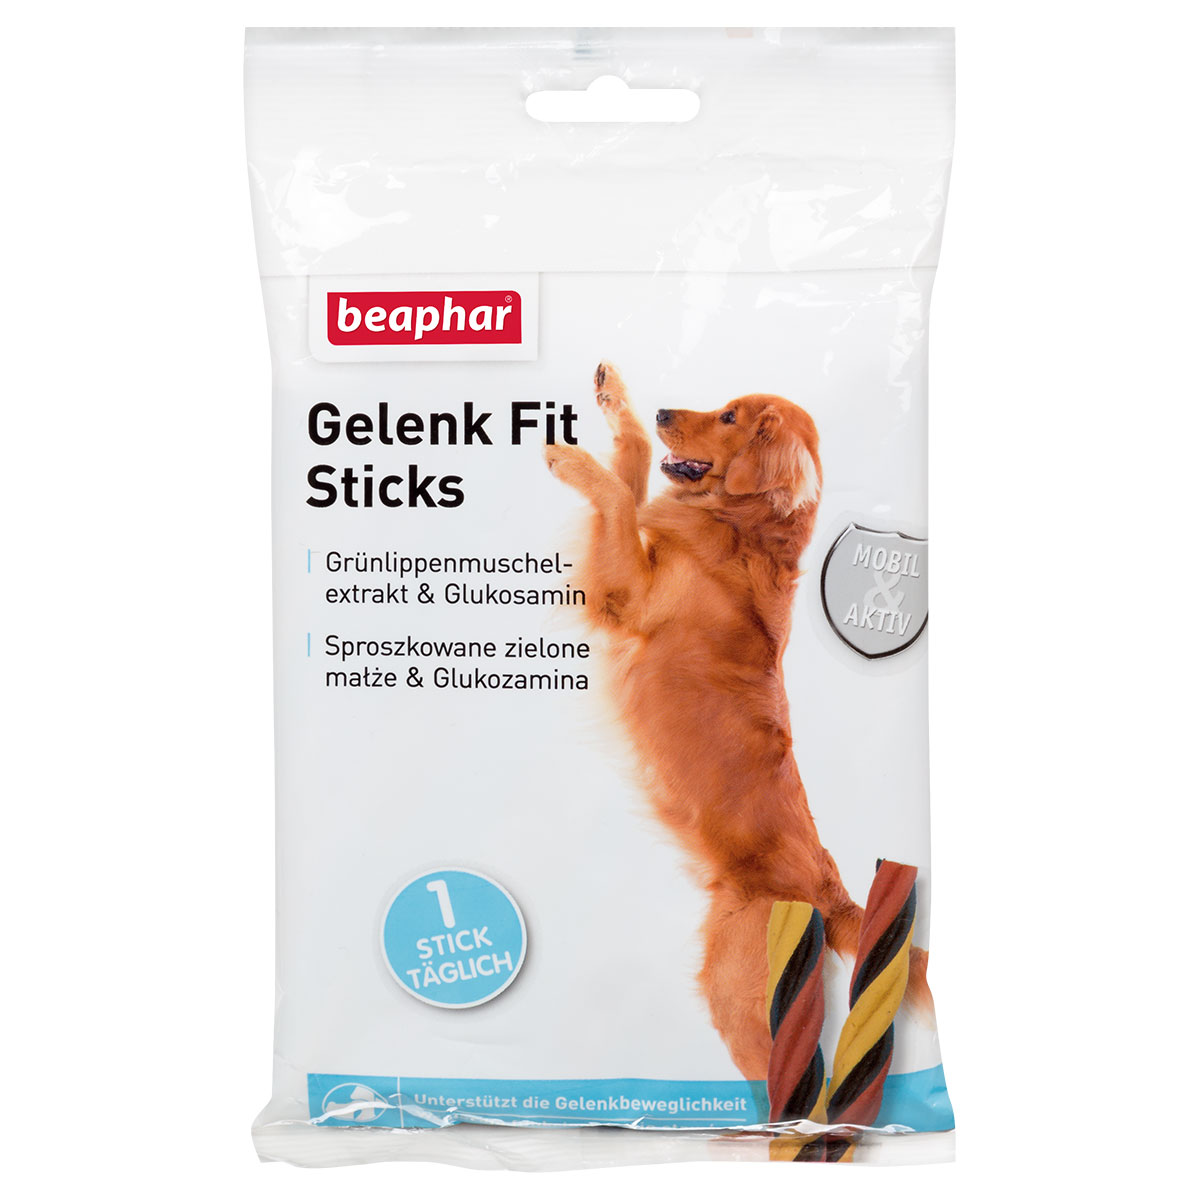 beaphar Gelenk Fit Sticks - tyčinky na klouby pro aktivní psy 7 ks / 175 g